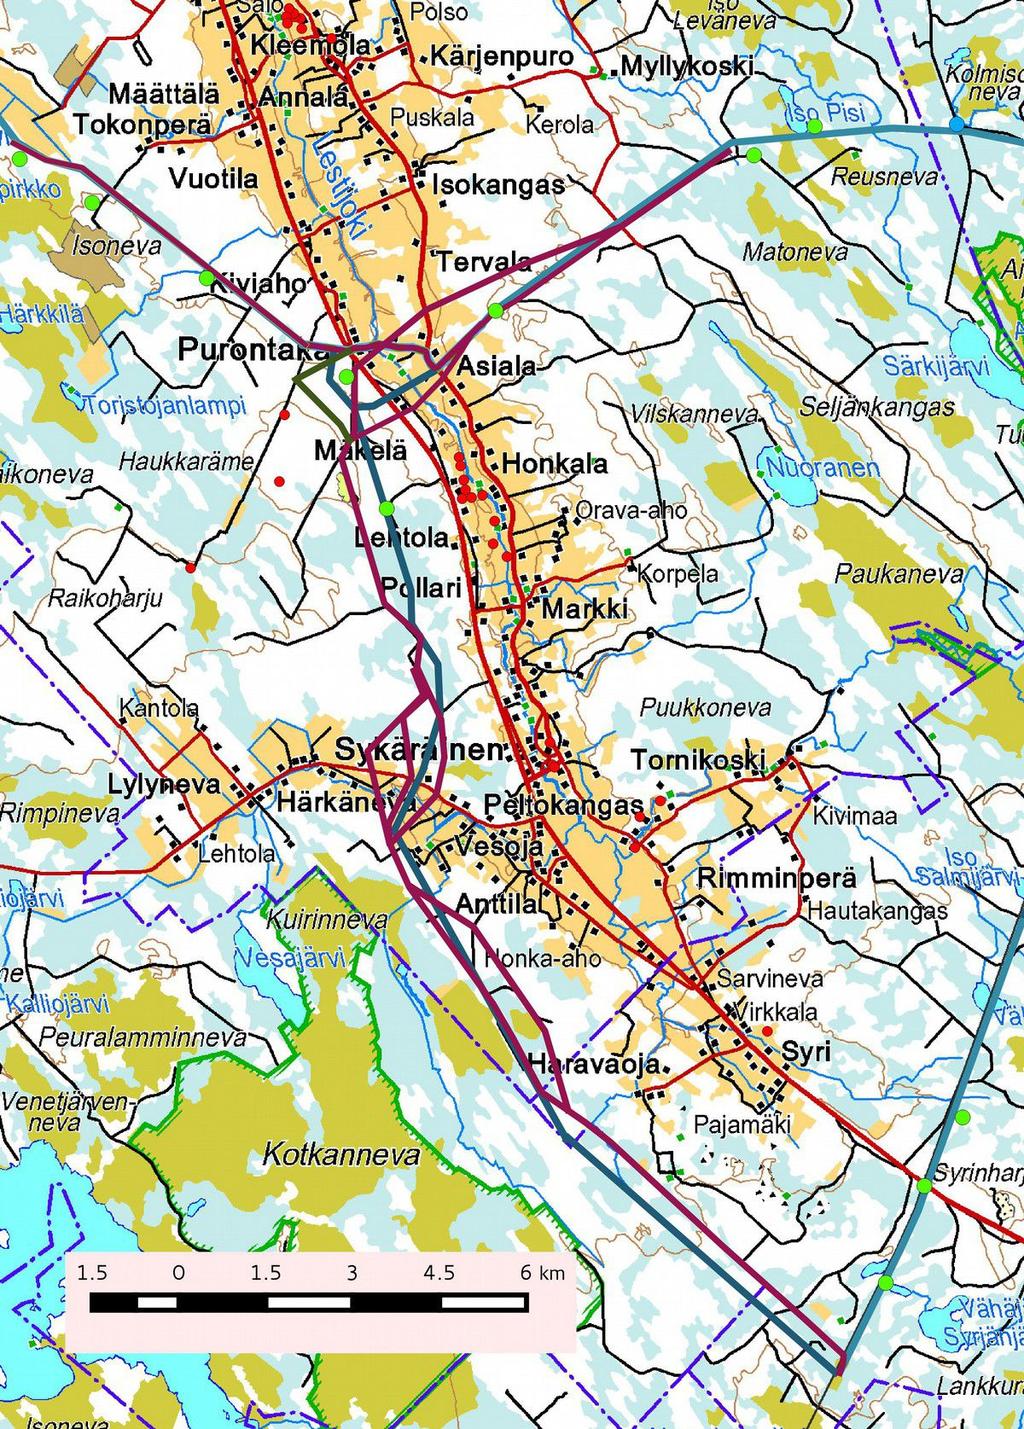 4 Kartta 1, Kokkola-Nivala voimalinja, keväällä 2014 inventoitu linjaus sinisenä, uudet linjausvaihtoehdot punaisena (marraskuu) ja vihreänä (joulukuu).